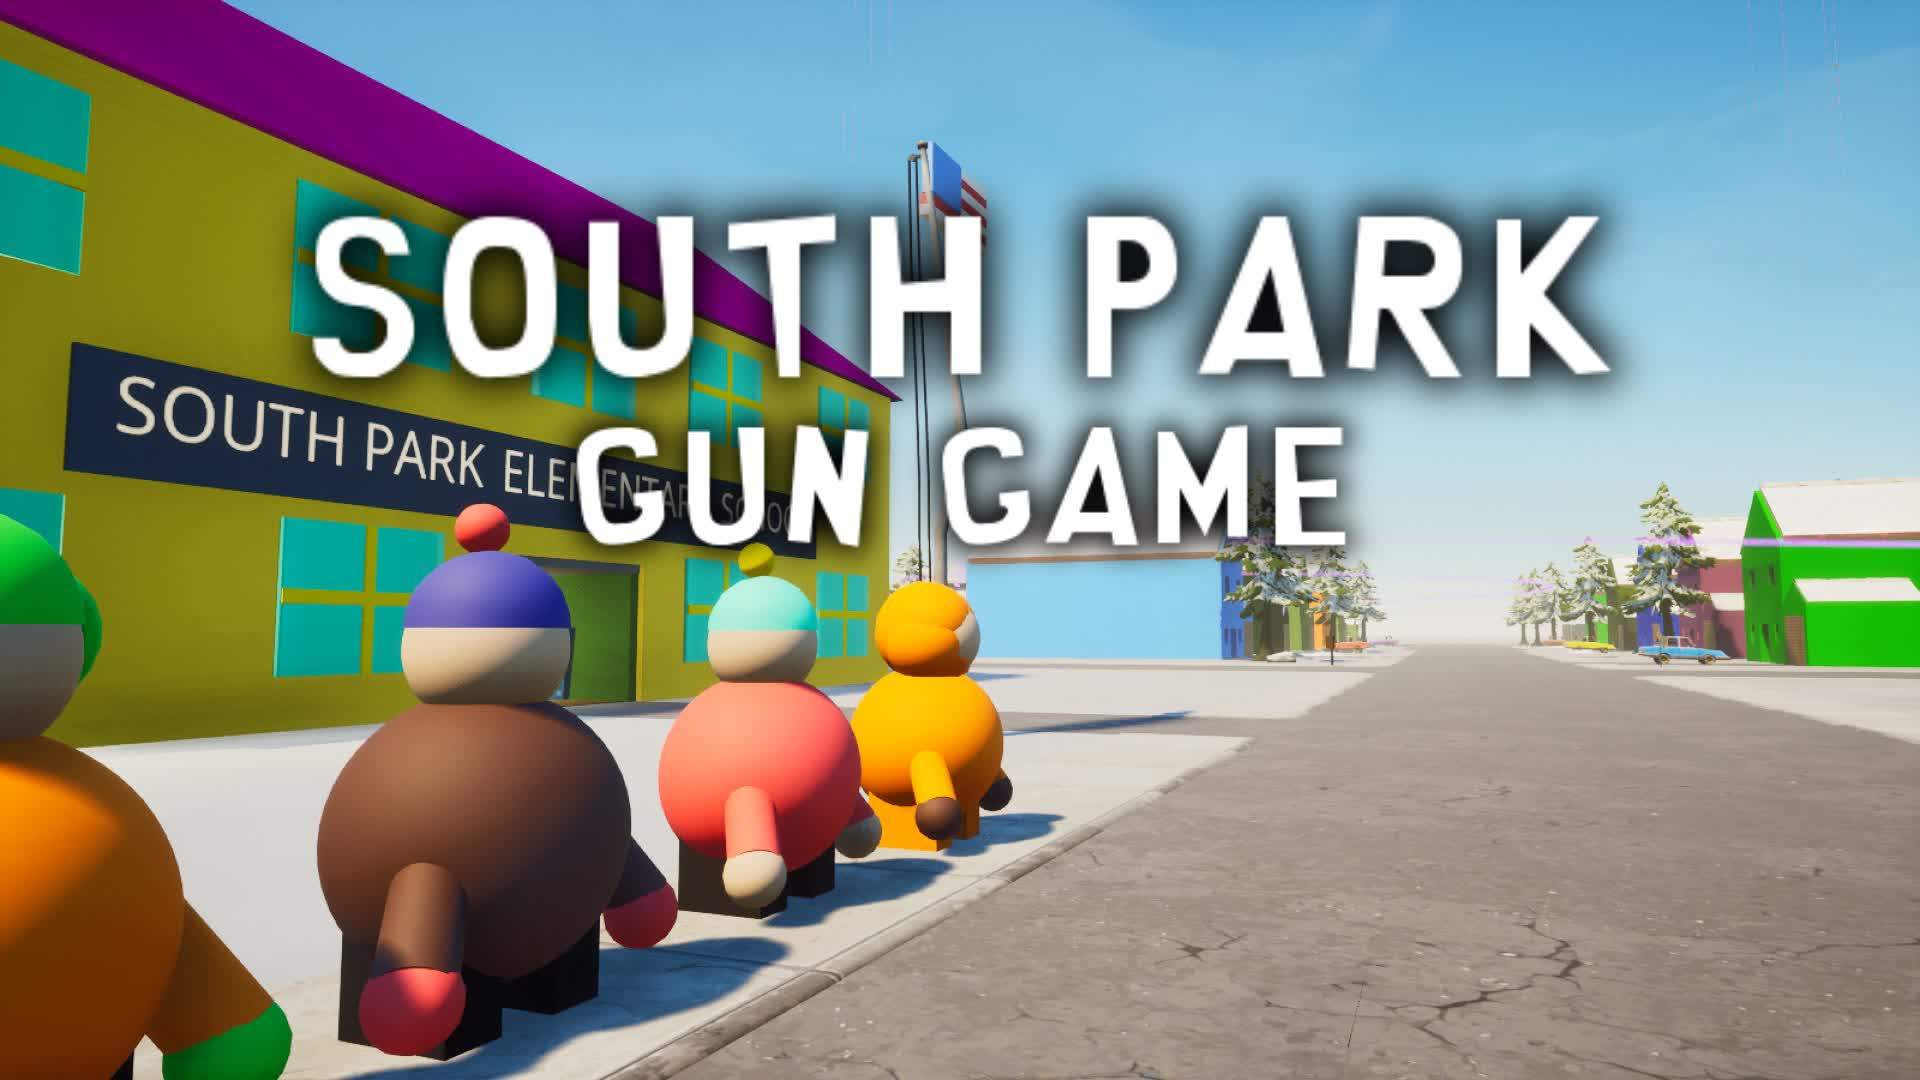 SOUTH PARK GUN GAME 7055-7136-4368